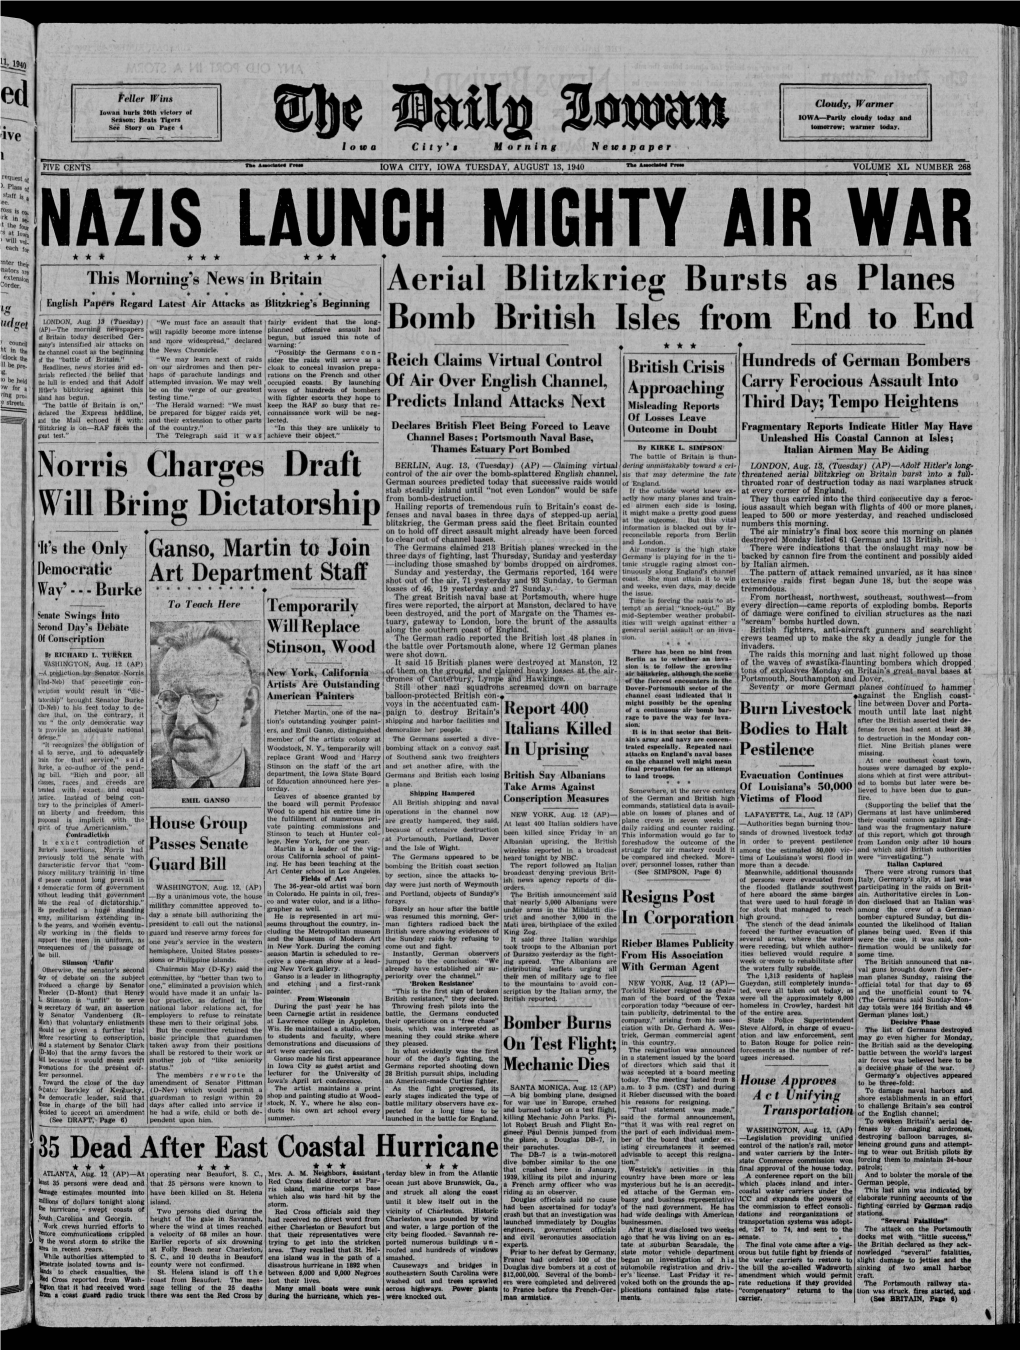 Daily Iowan (Iowa City, Iowa), 1940-08-13